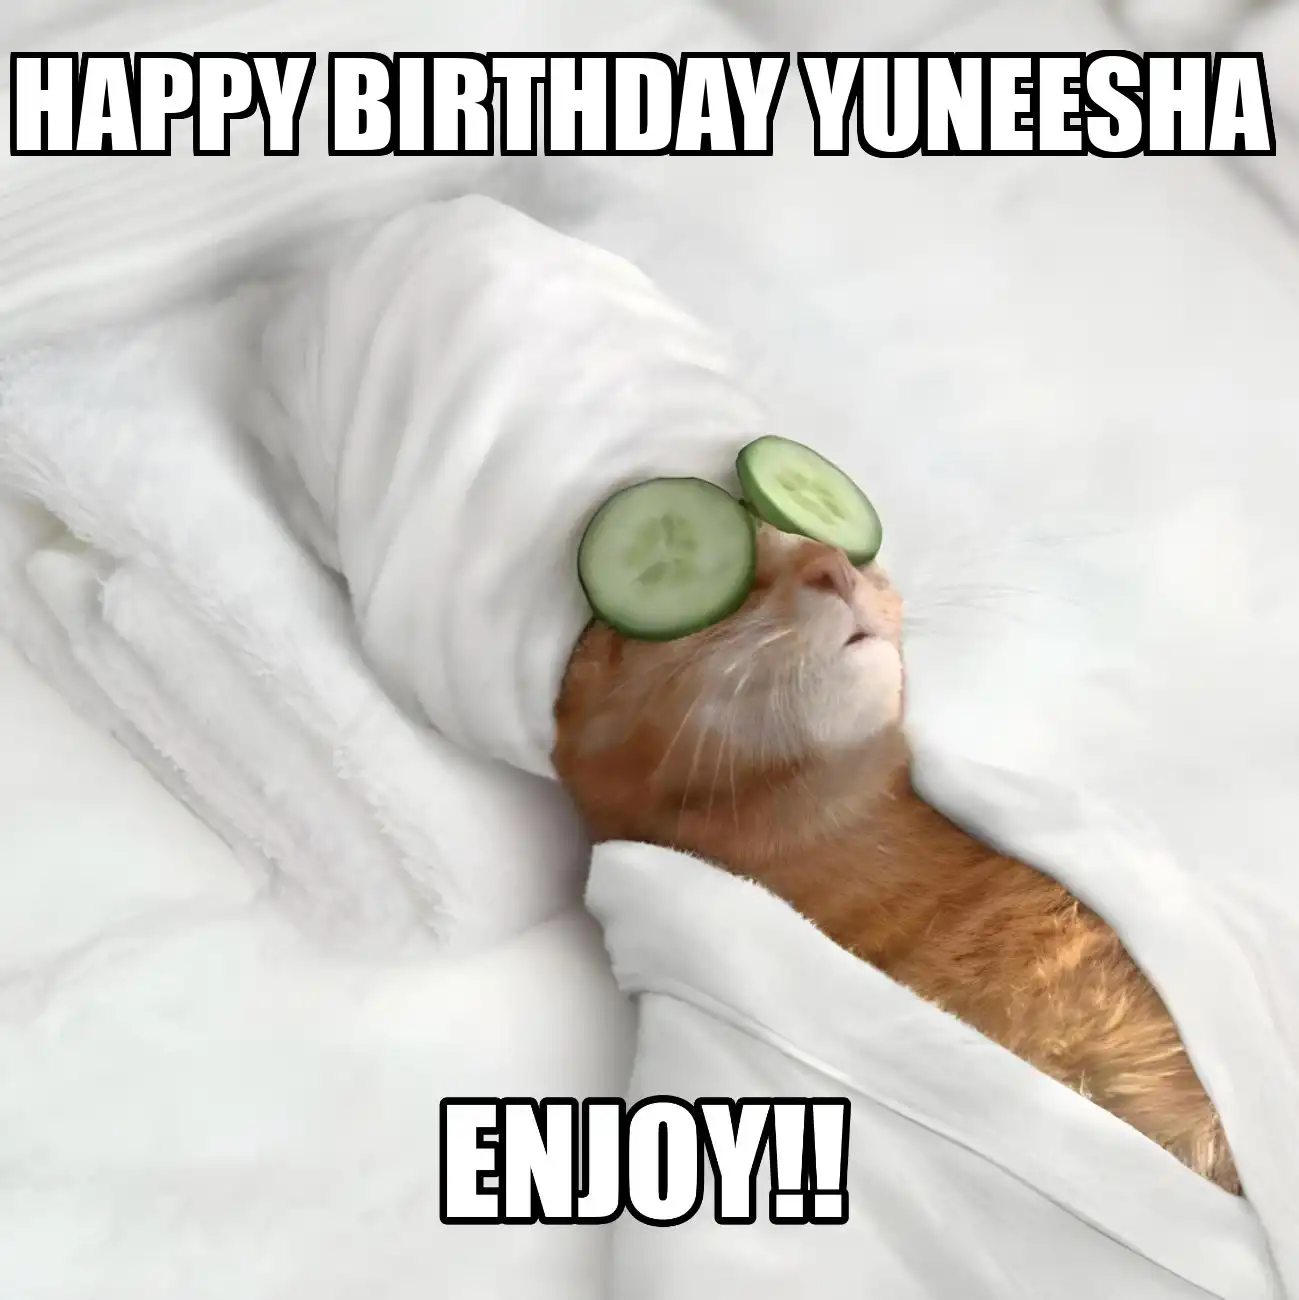 Happy Birthday Yuneesha Enjoy Cat Meme